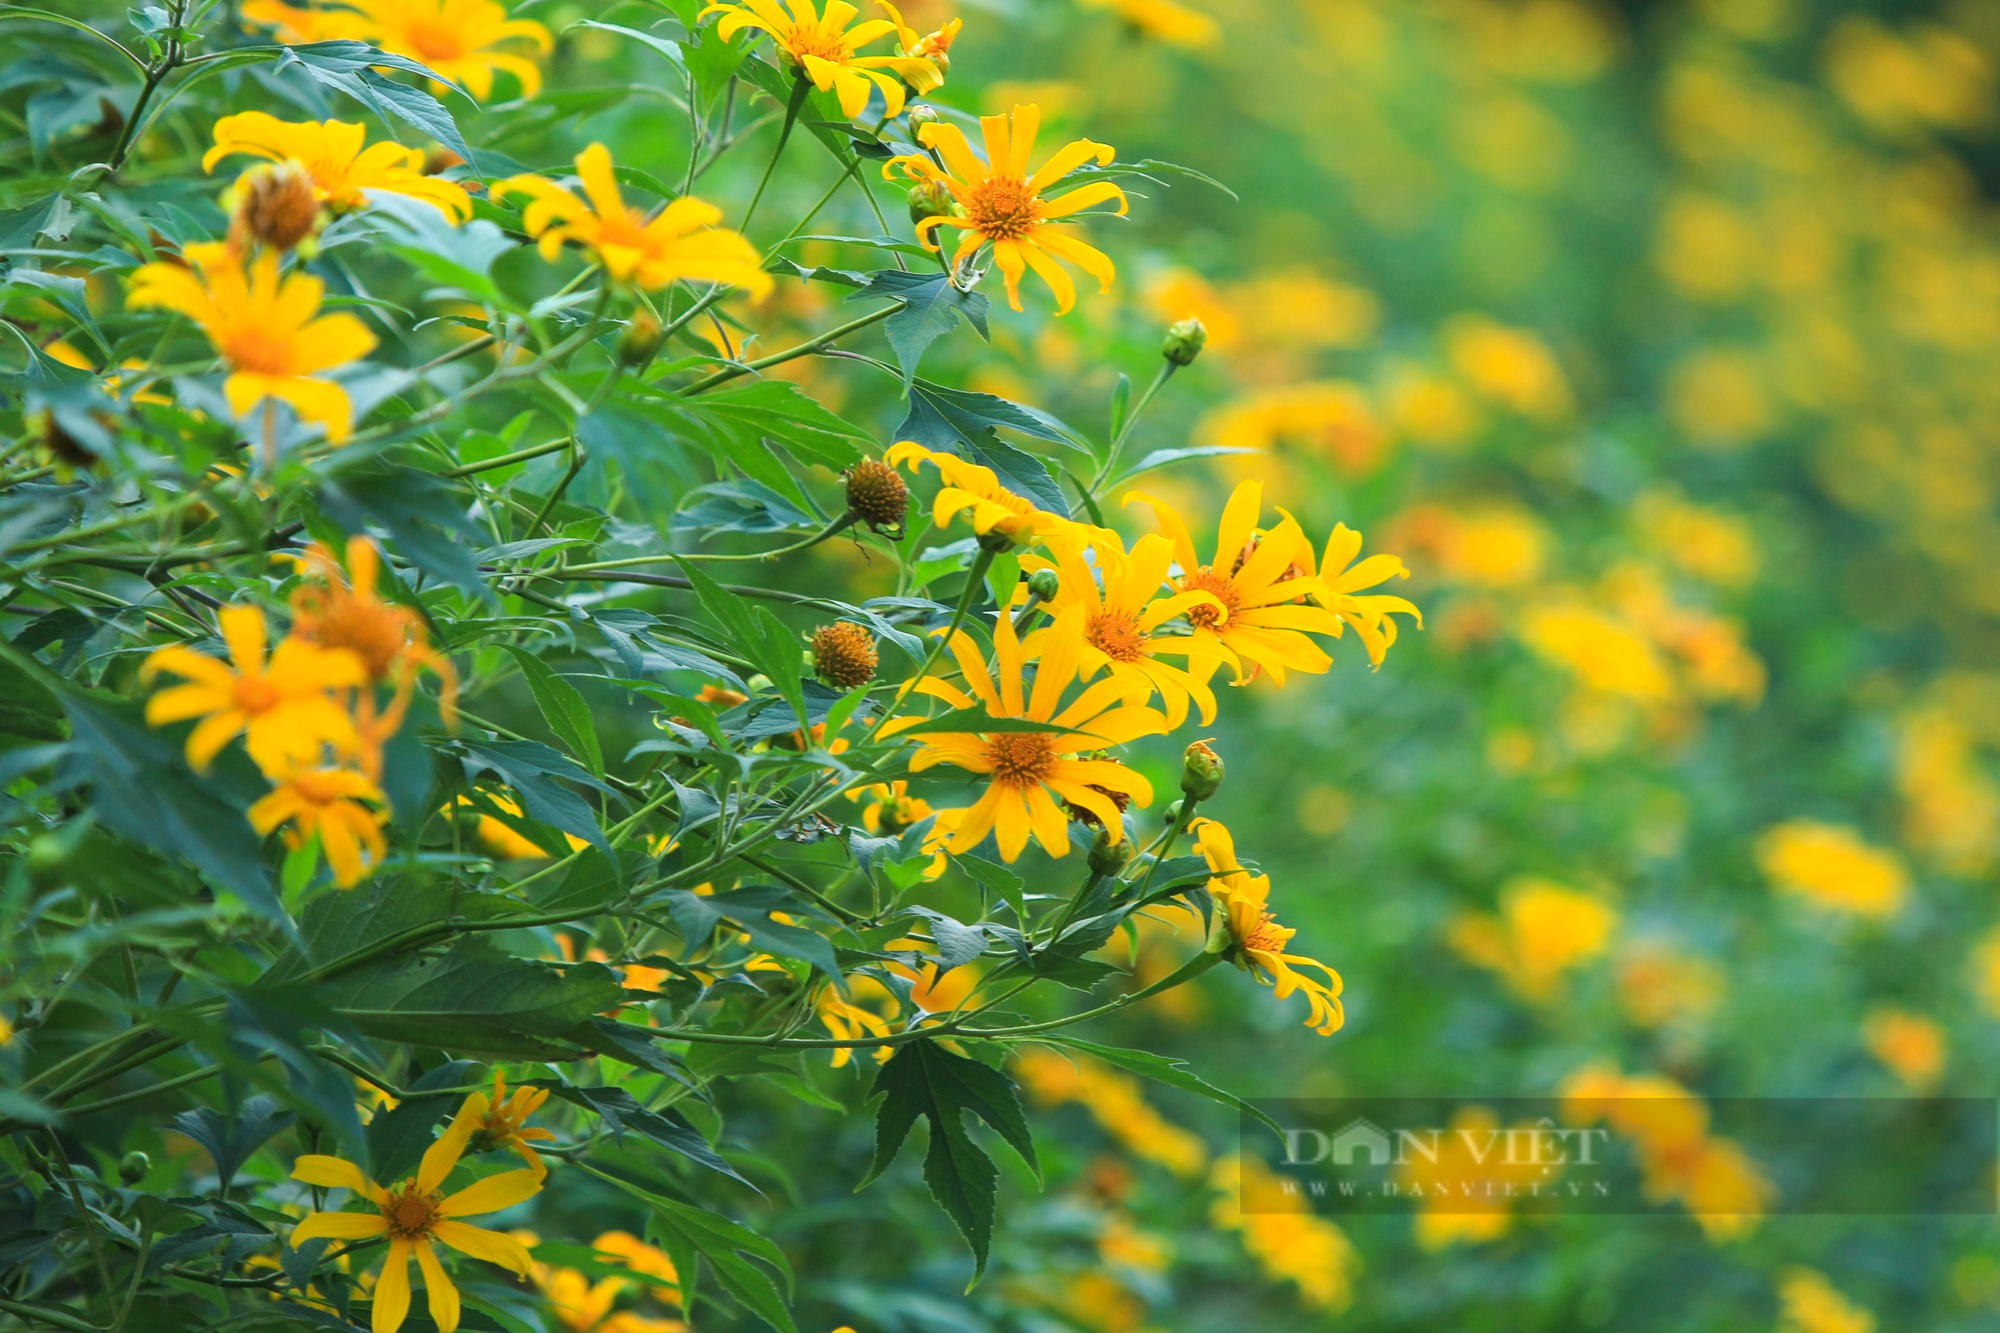 Ngắm loài hoa màu vàng óng tại nơi cao nhất Hà Nội - Ảnh 8.